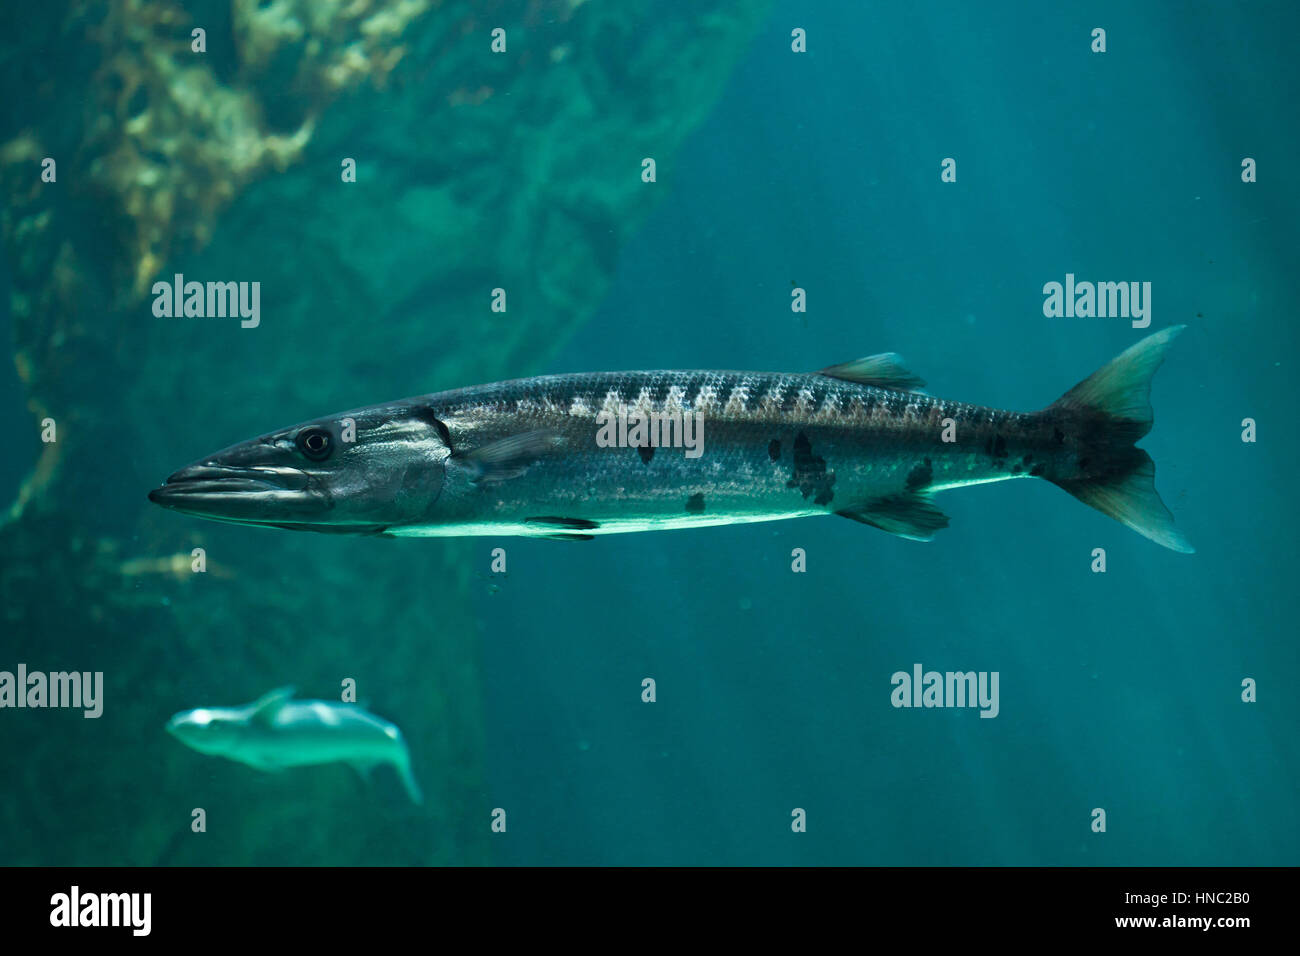 Gran barracuda (Sphyraena barracuda), también conocido como el gigante de barracuda. Foto de stock